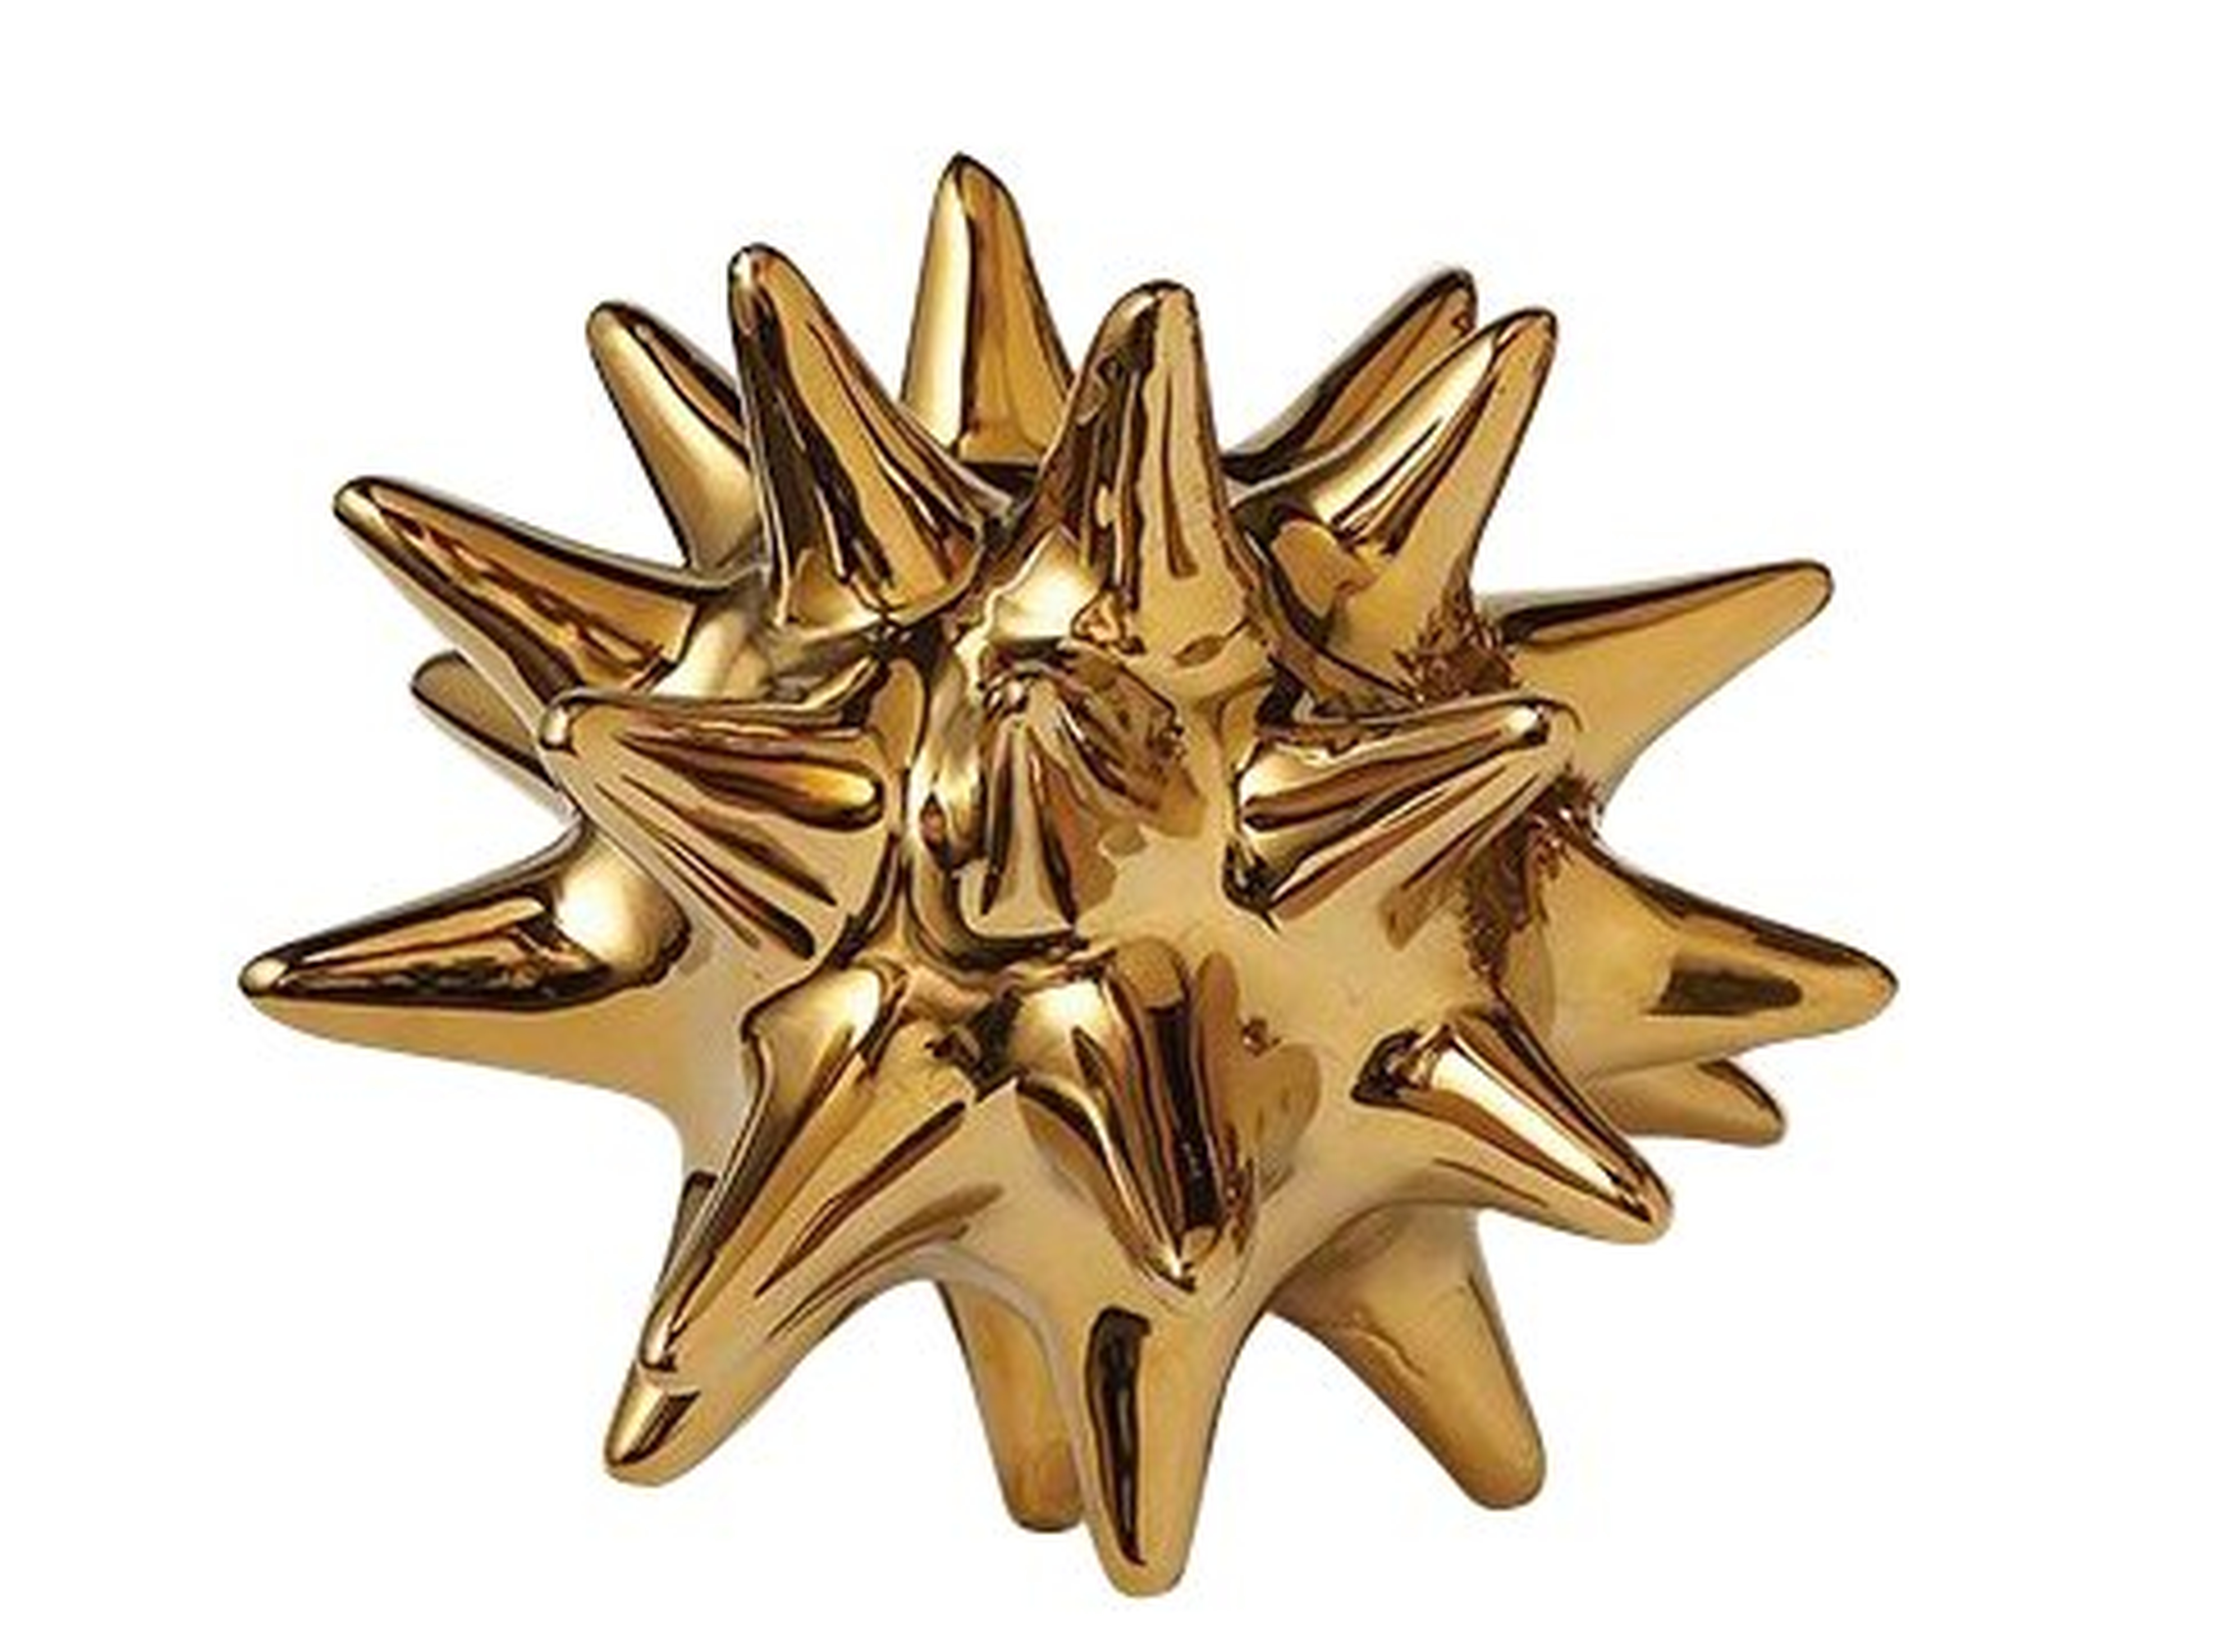 Chaidez Urchin Shiny Gold Object - Wayfair